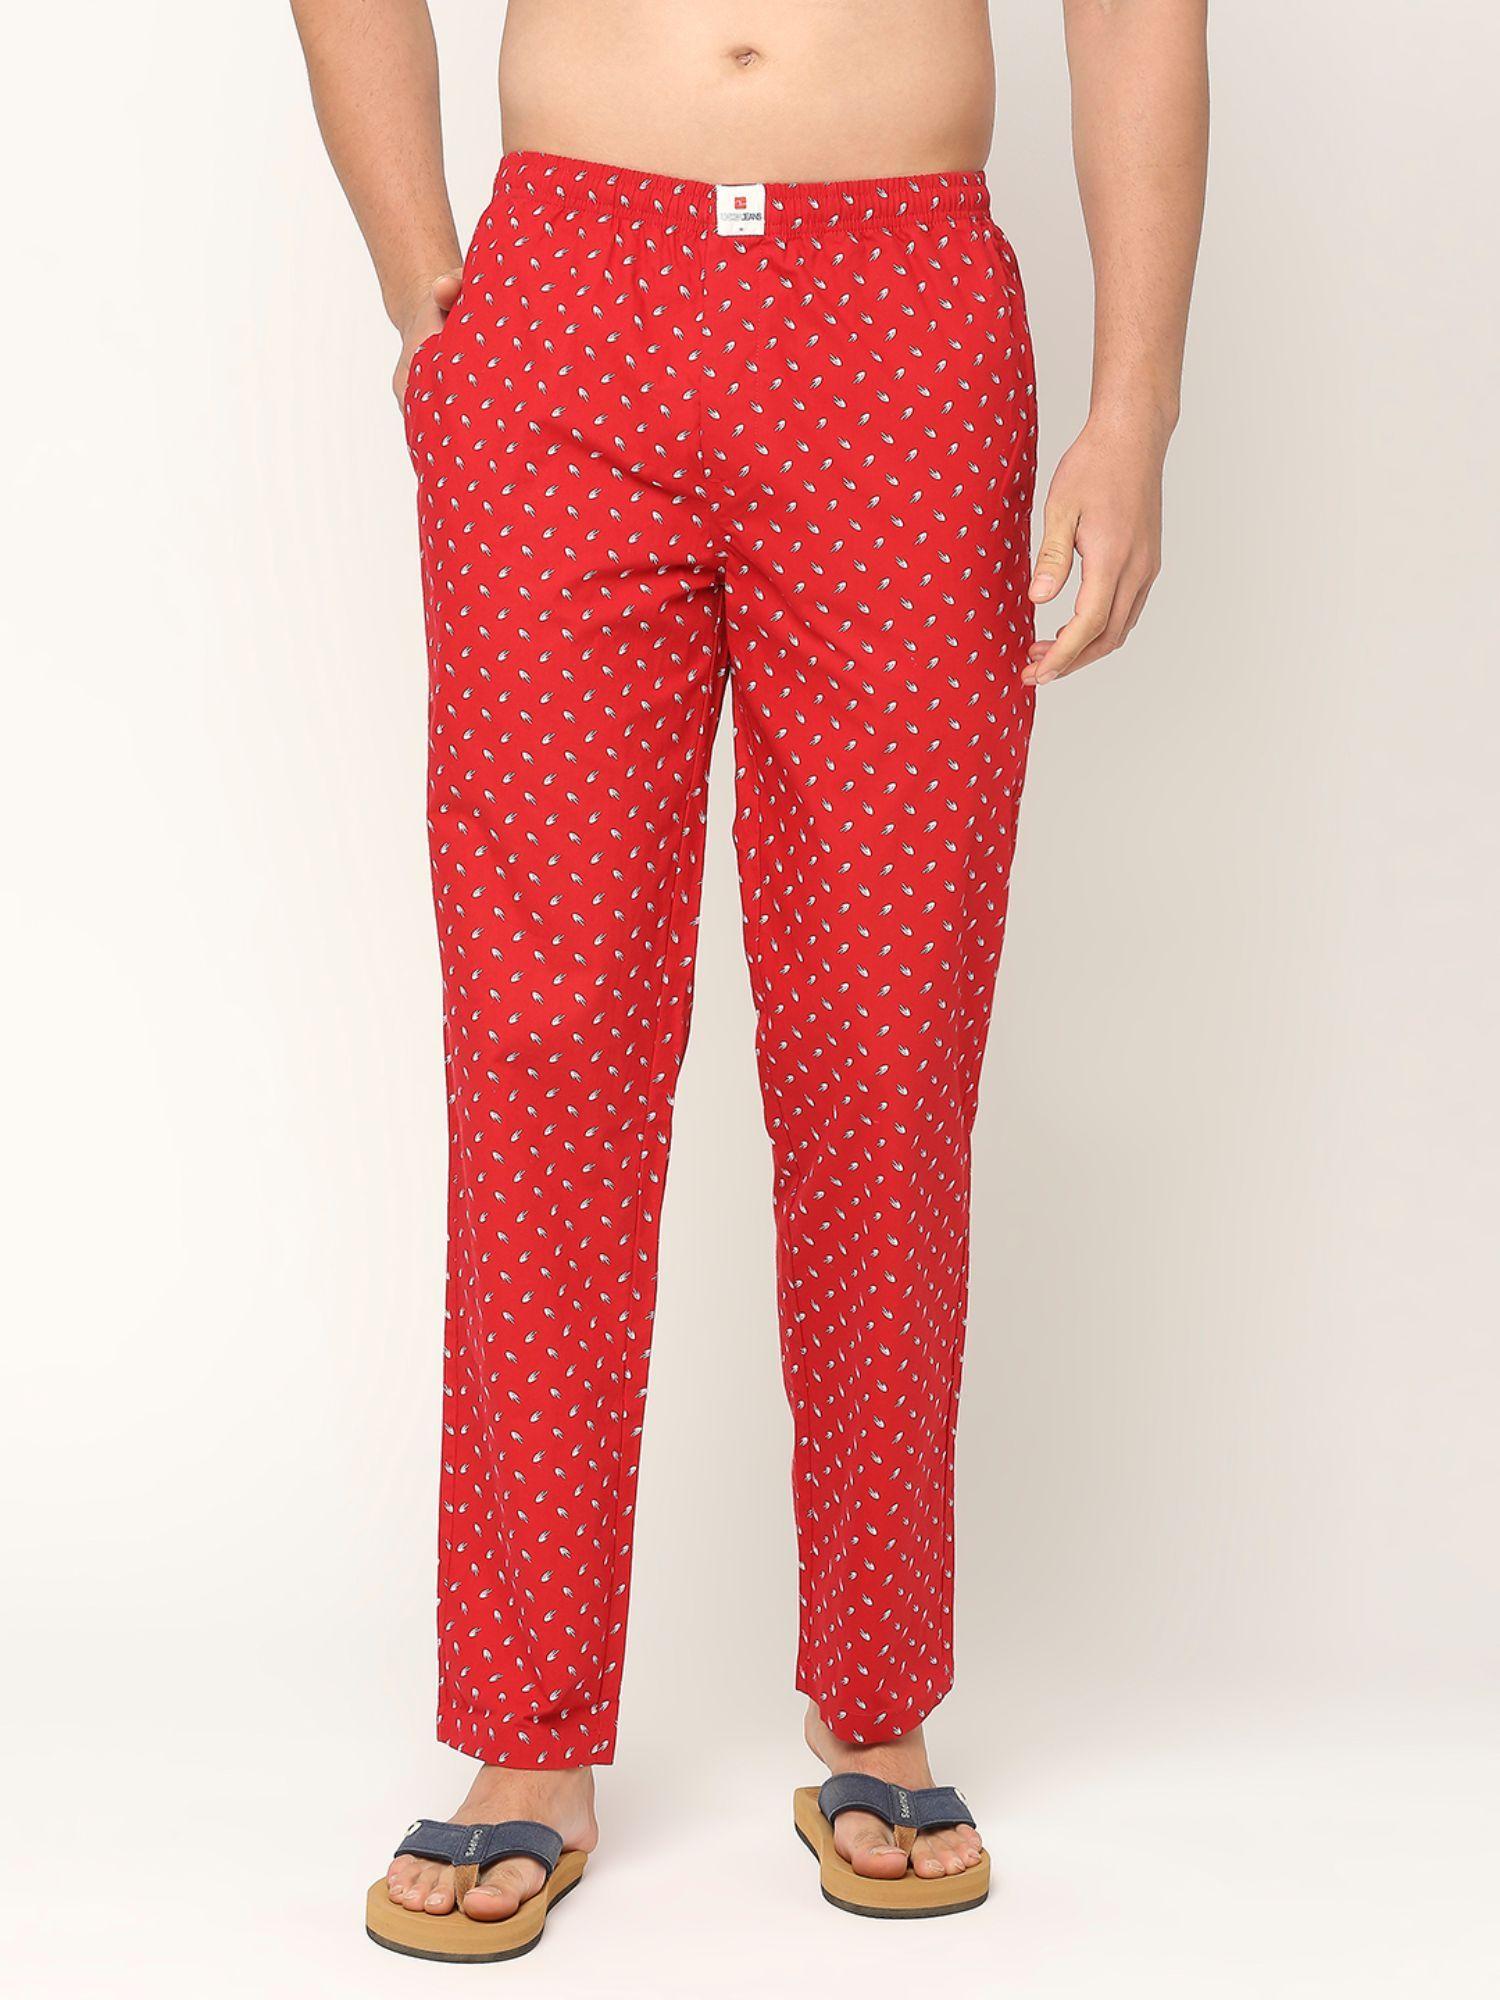 Premium Cotton Printed Men Red Pyjama